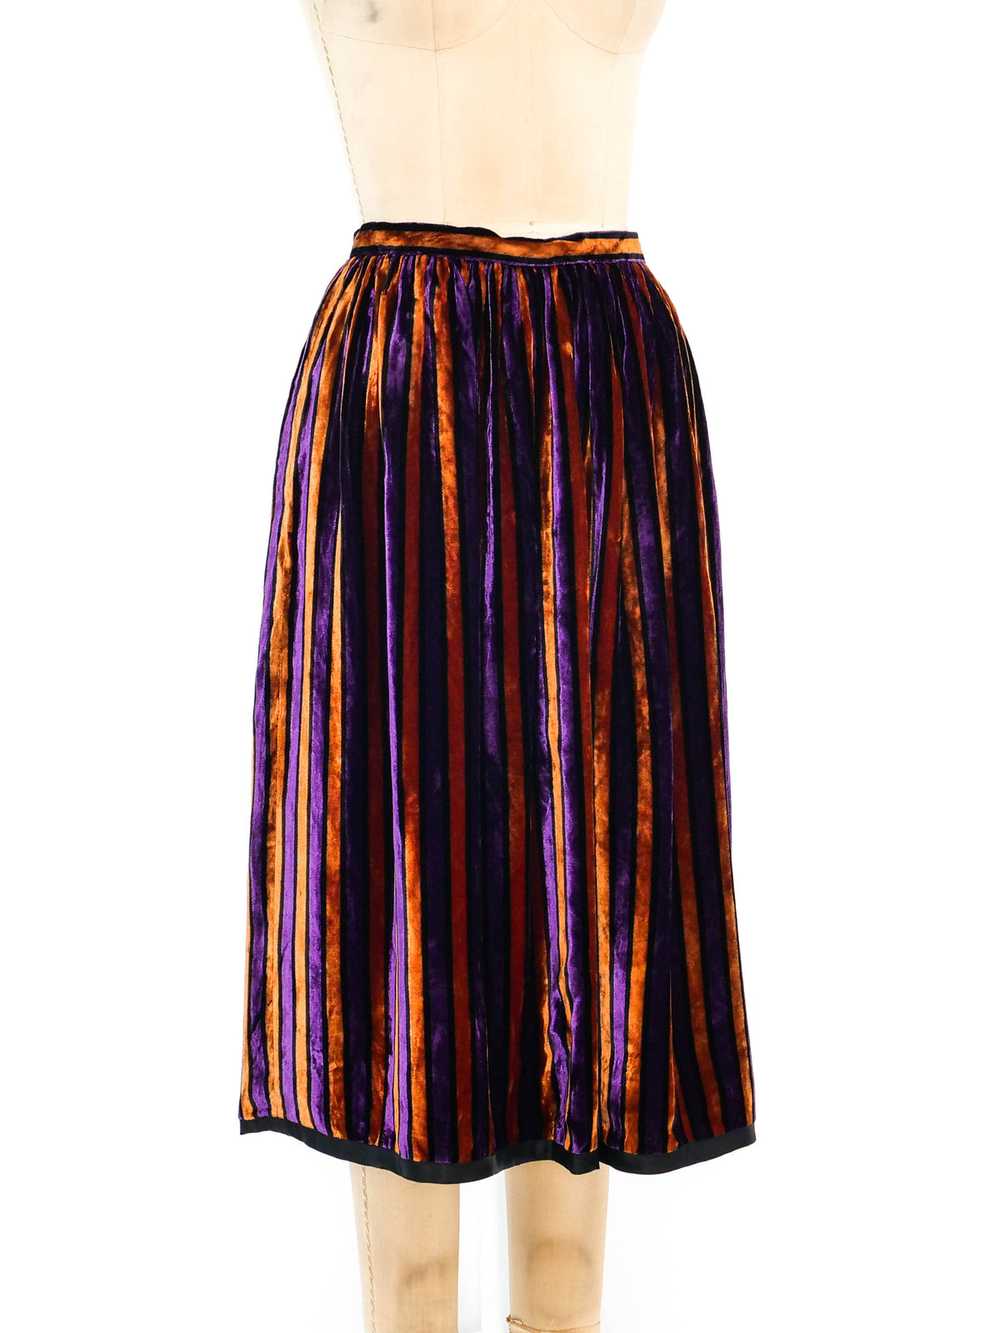 Givenchy Striped Velvet Skirt - image 3